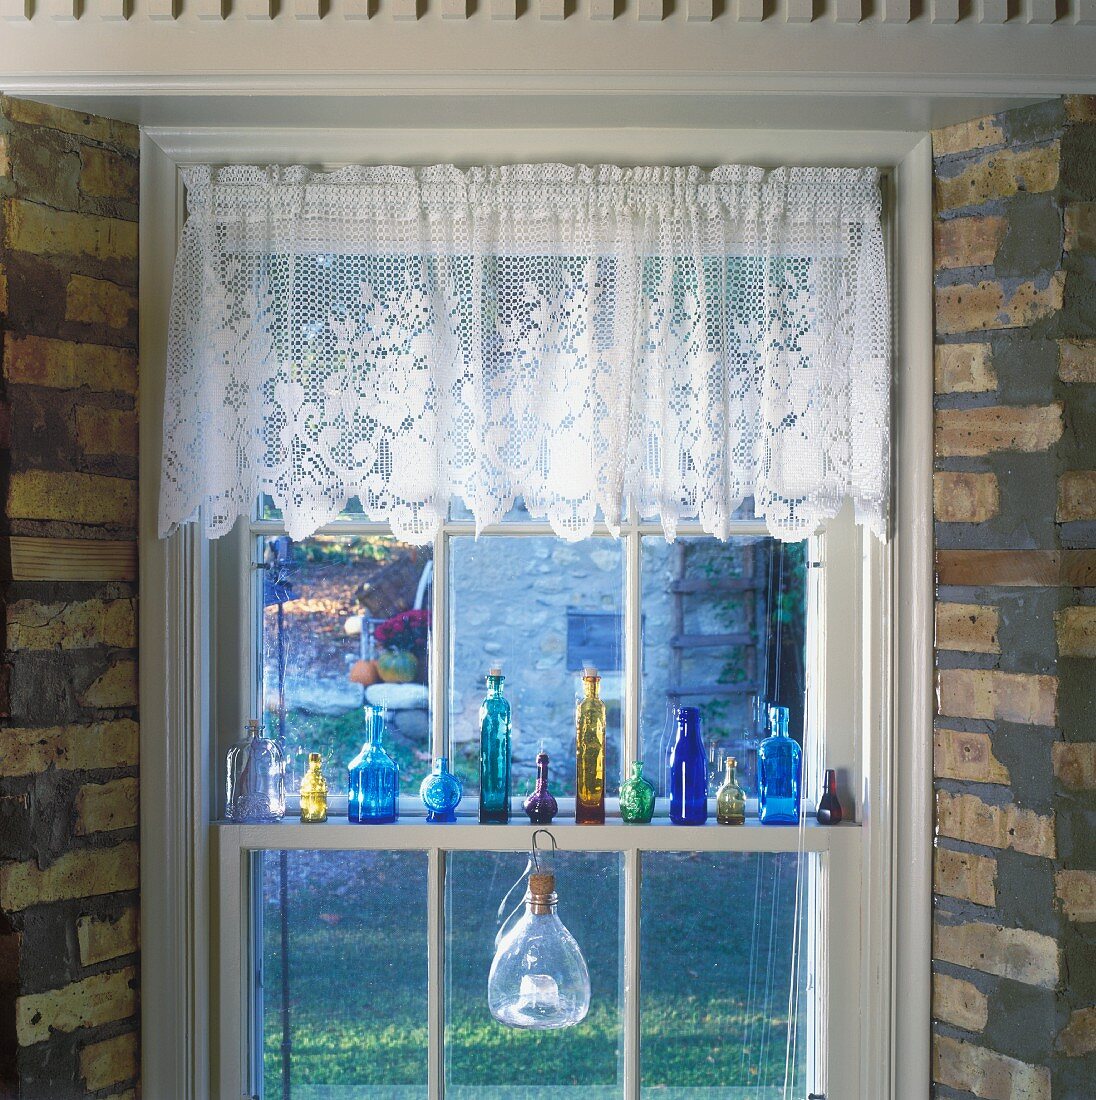 Dekoriertes Sprossenfenster mit Spitzengardine und einer Glasfläschchensammlung